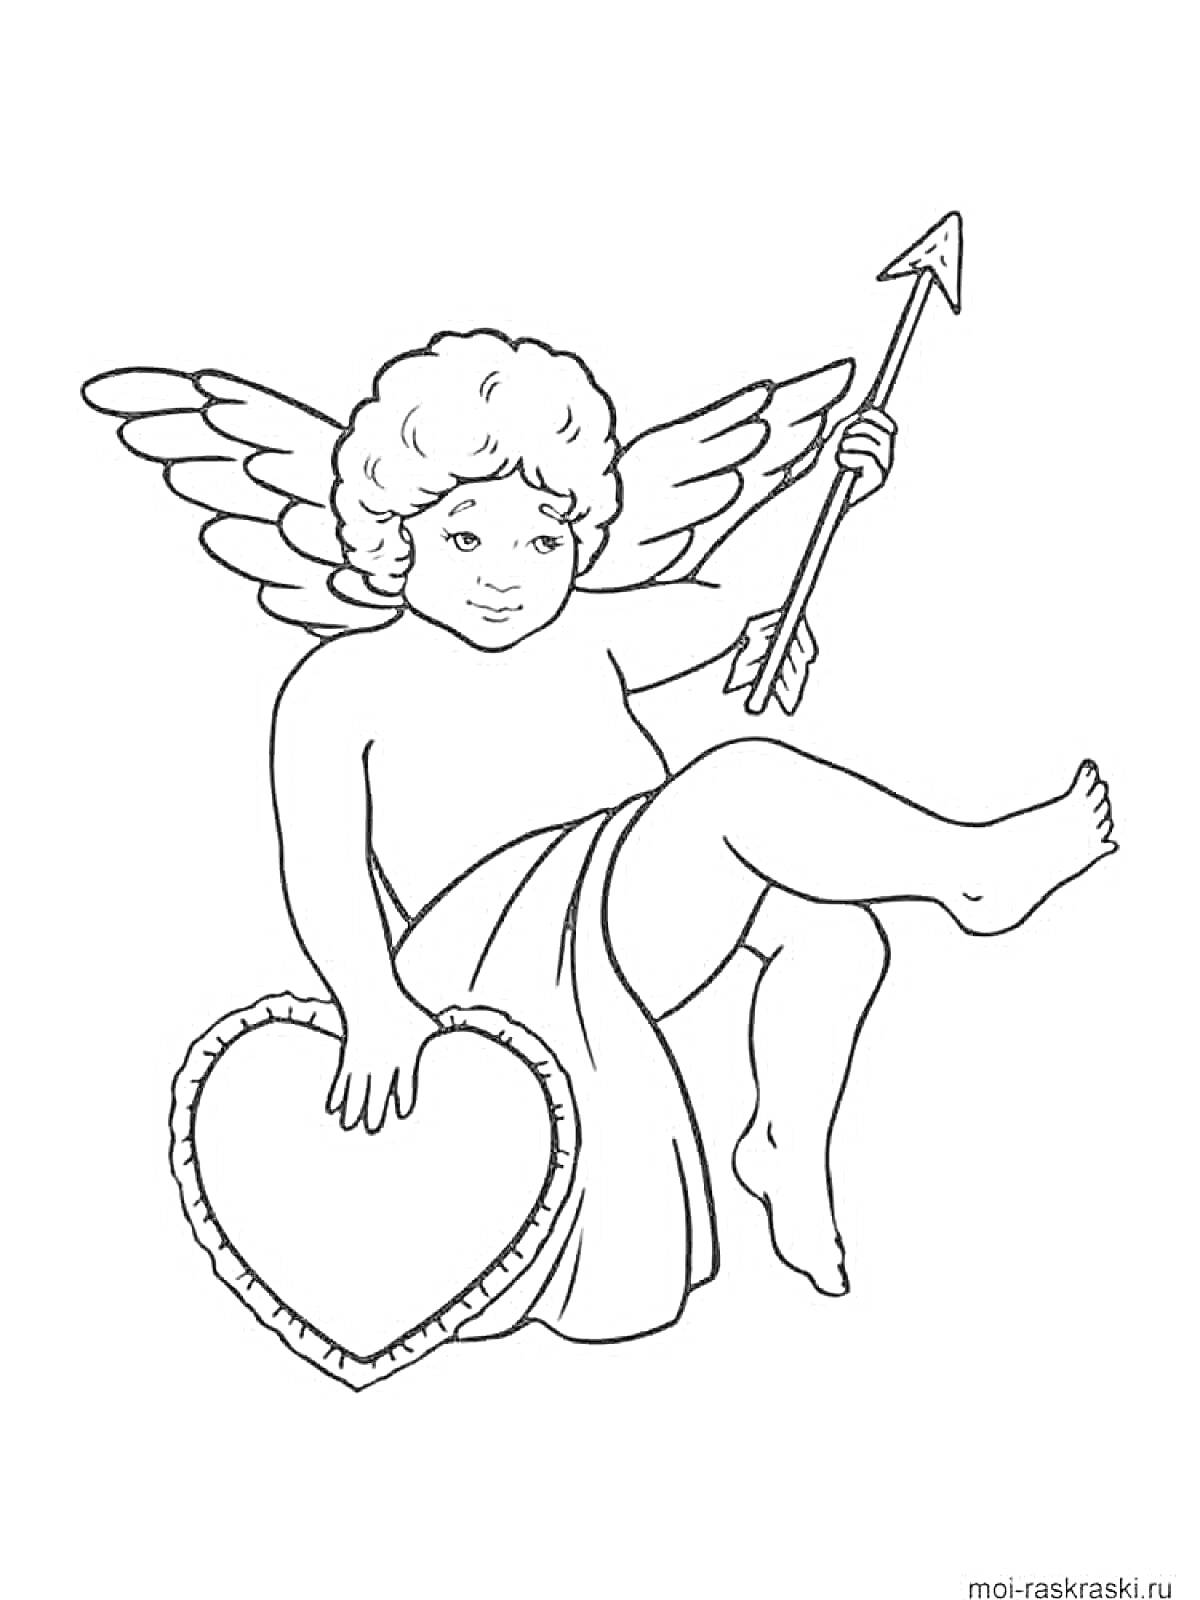 Раскраска Ангел с крыльями, держащий стрелу и сердце